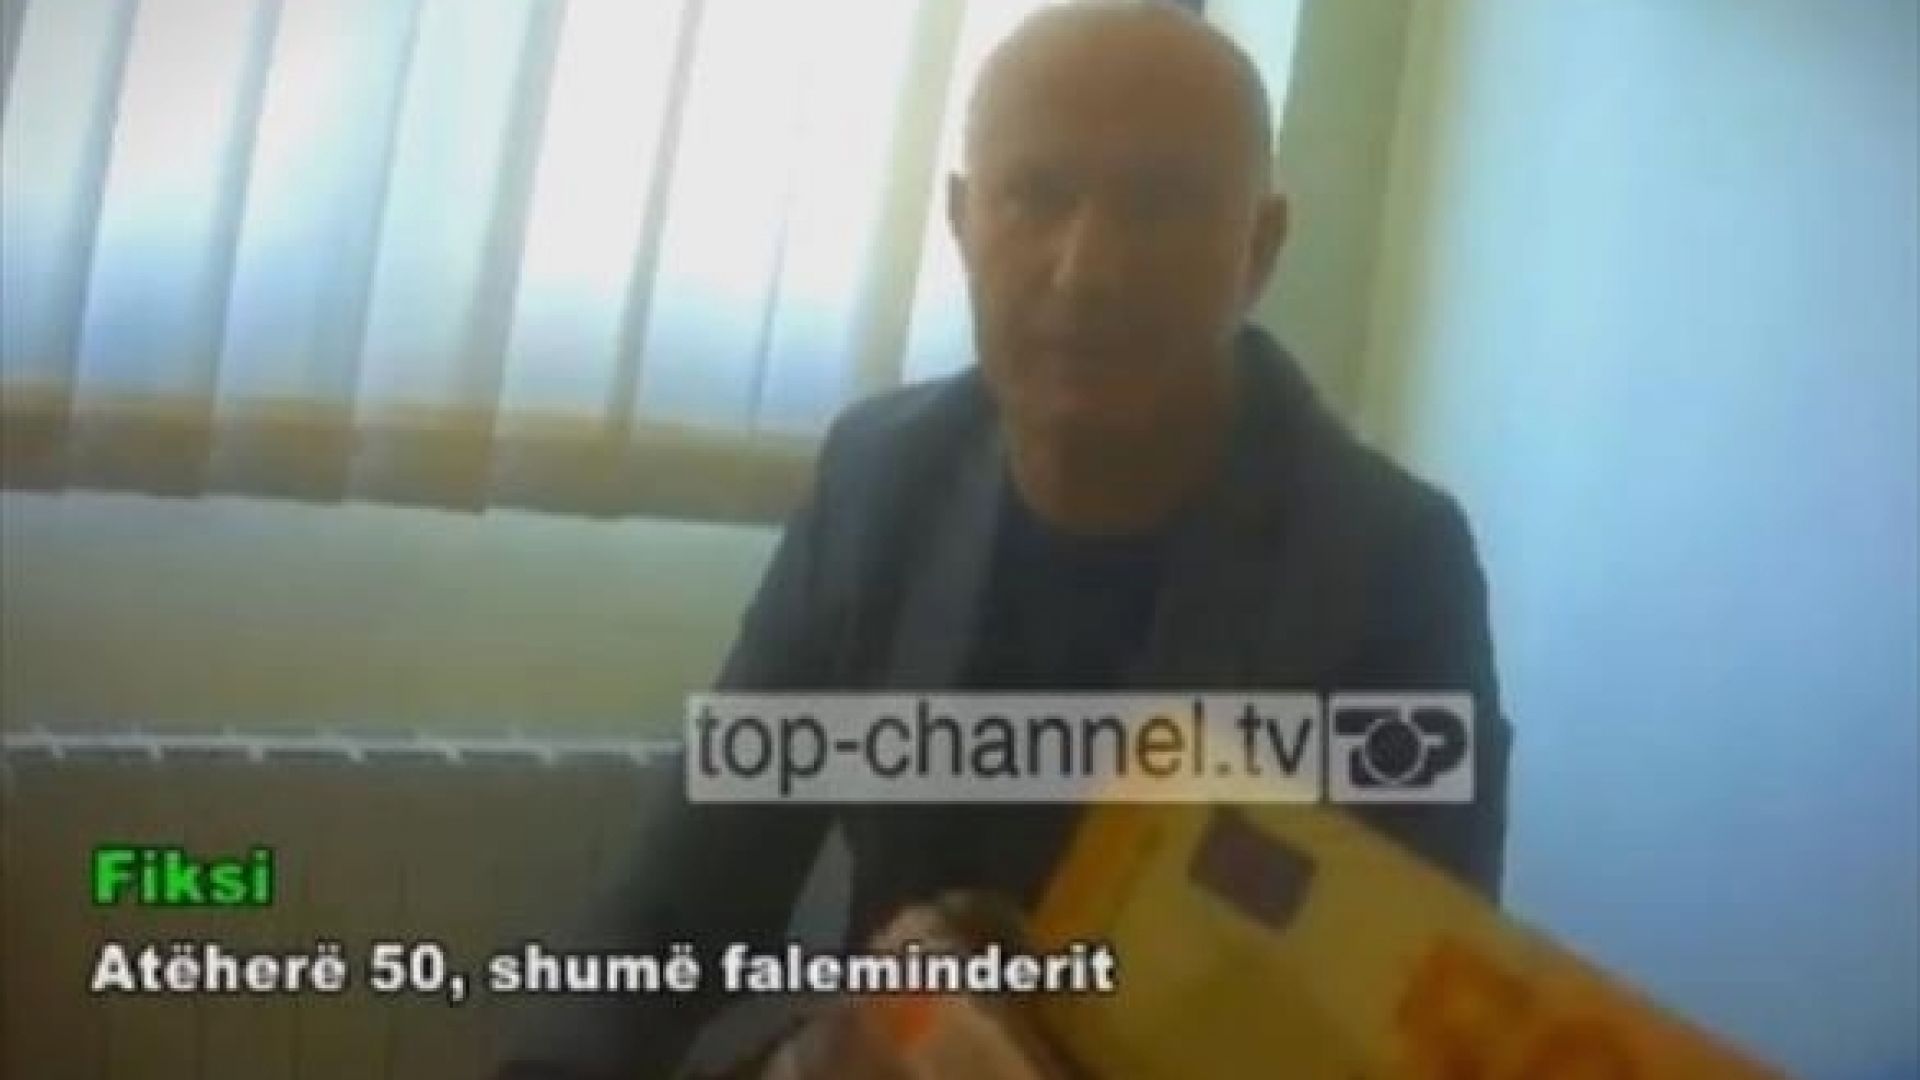 Албанска телевизия засне македонски зам.-министър да взима подкуп (видео)